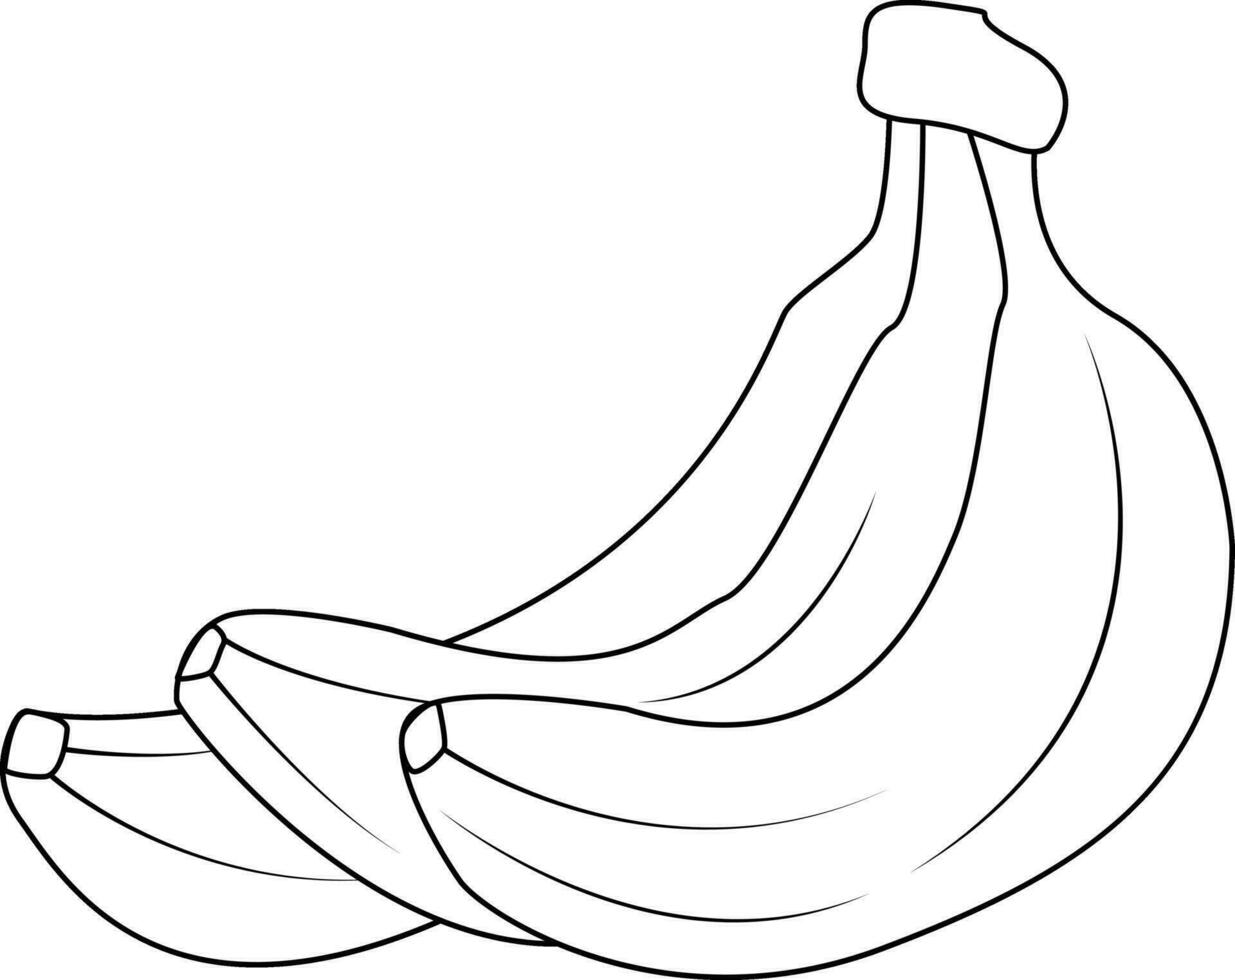 banaan silhouet. tropisch reeks geel fruit banaan. natuurlijk Product. gezond aan het eten en eetpatroon. ontwerp van groet kaarten, affiches, pleisters, prints Aan kleren, emblemen. vector